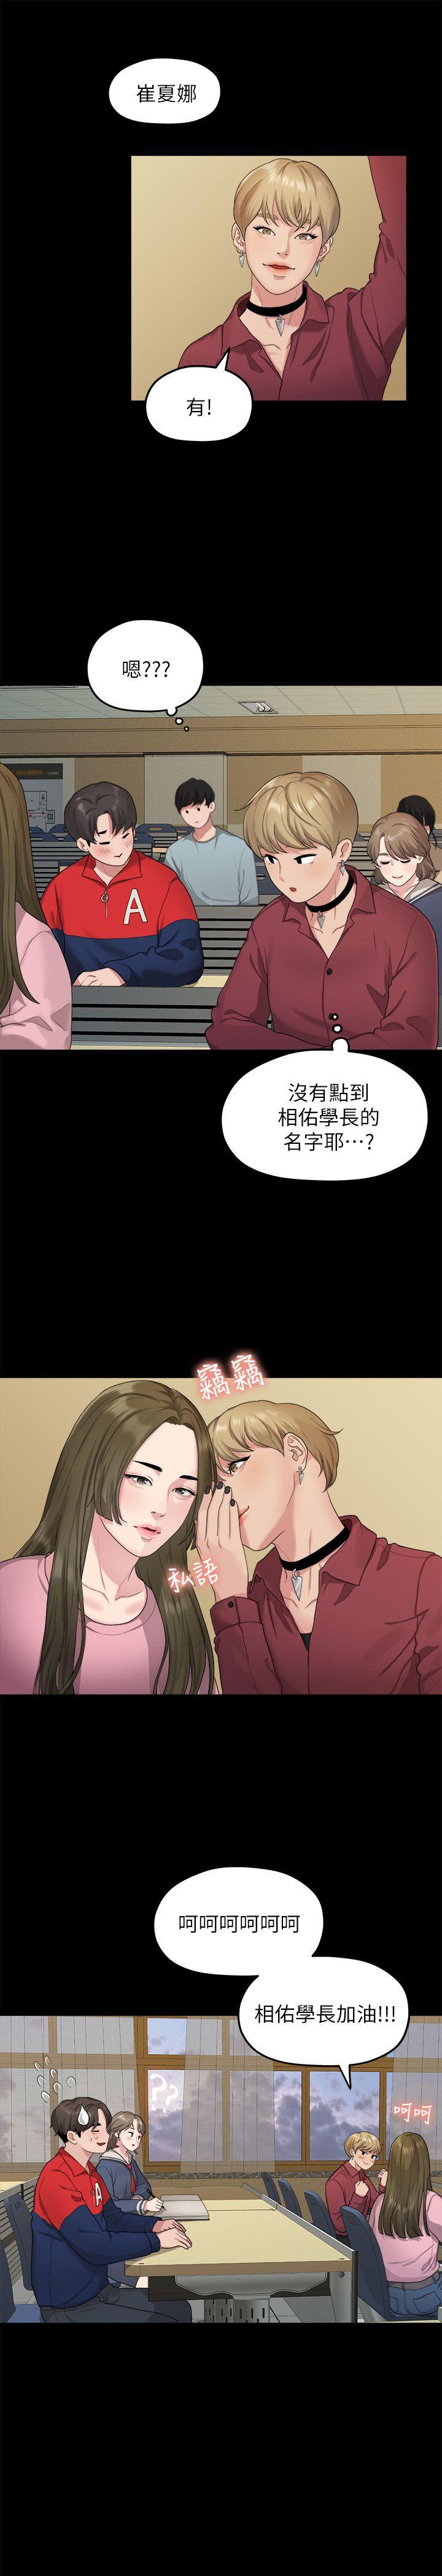 韩国污漫画 我們的非常關系 第20话-相佑与多贤的初次见面 18